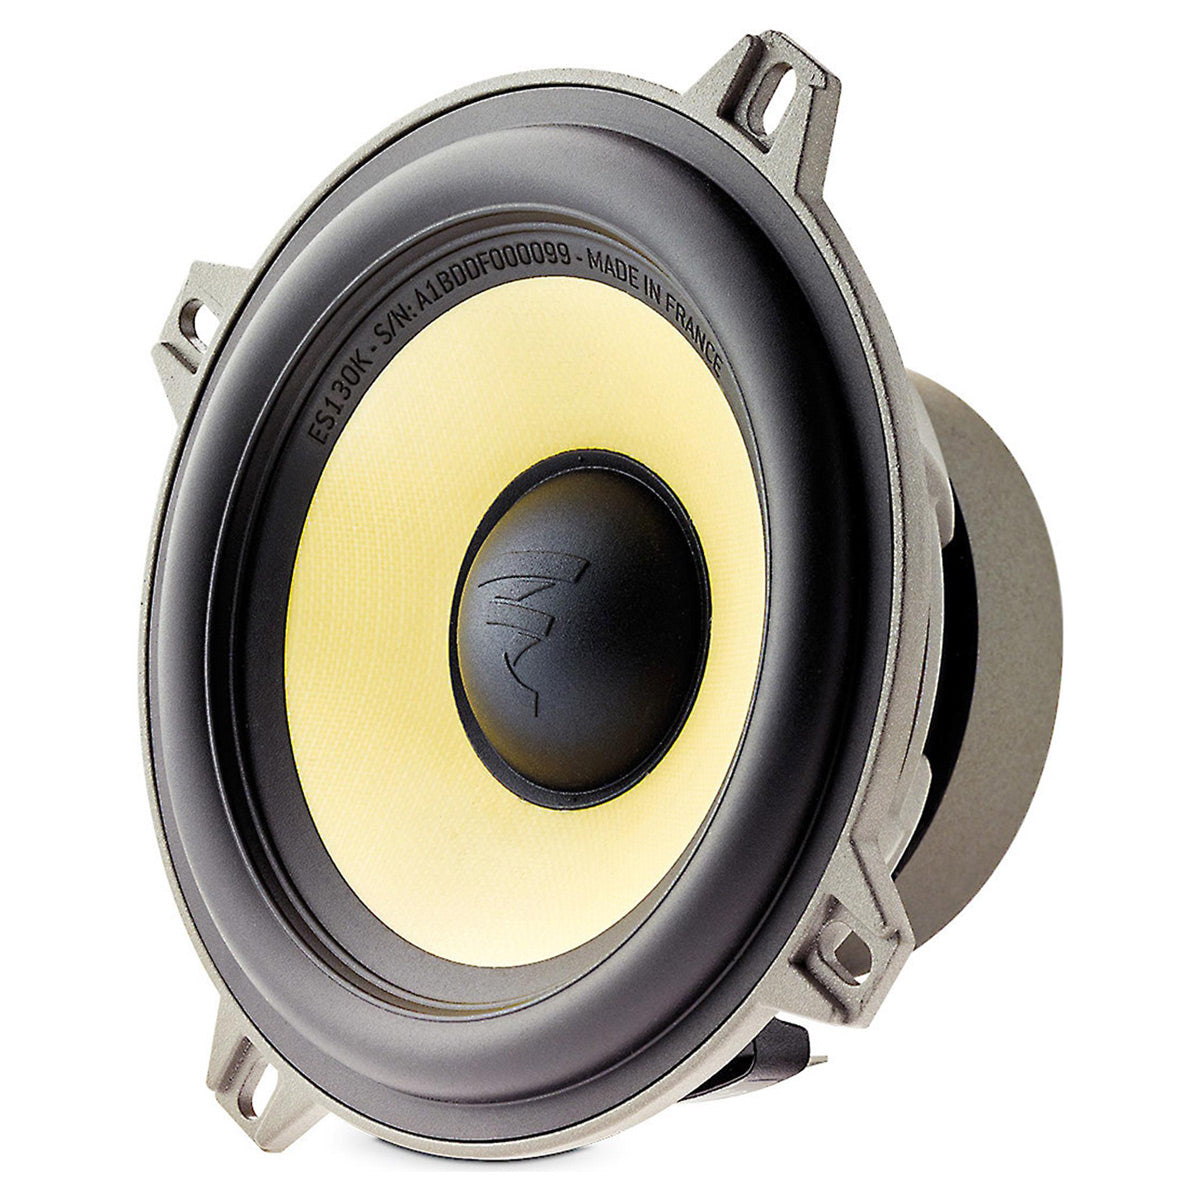 Focal ES 130 K 5-1/4" K2 Power 2-Way Component Speakers